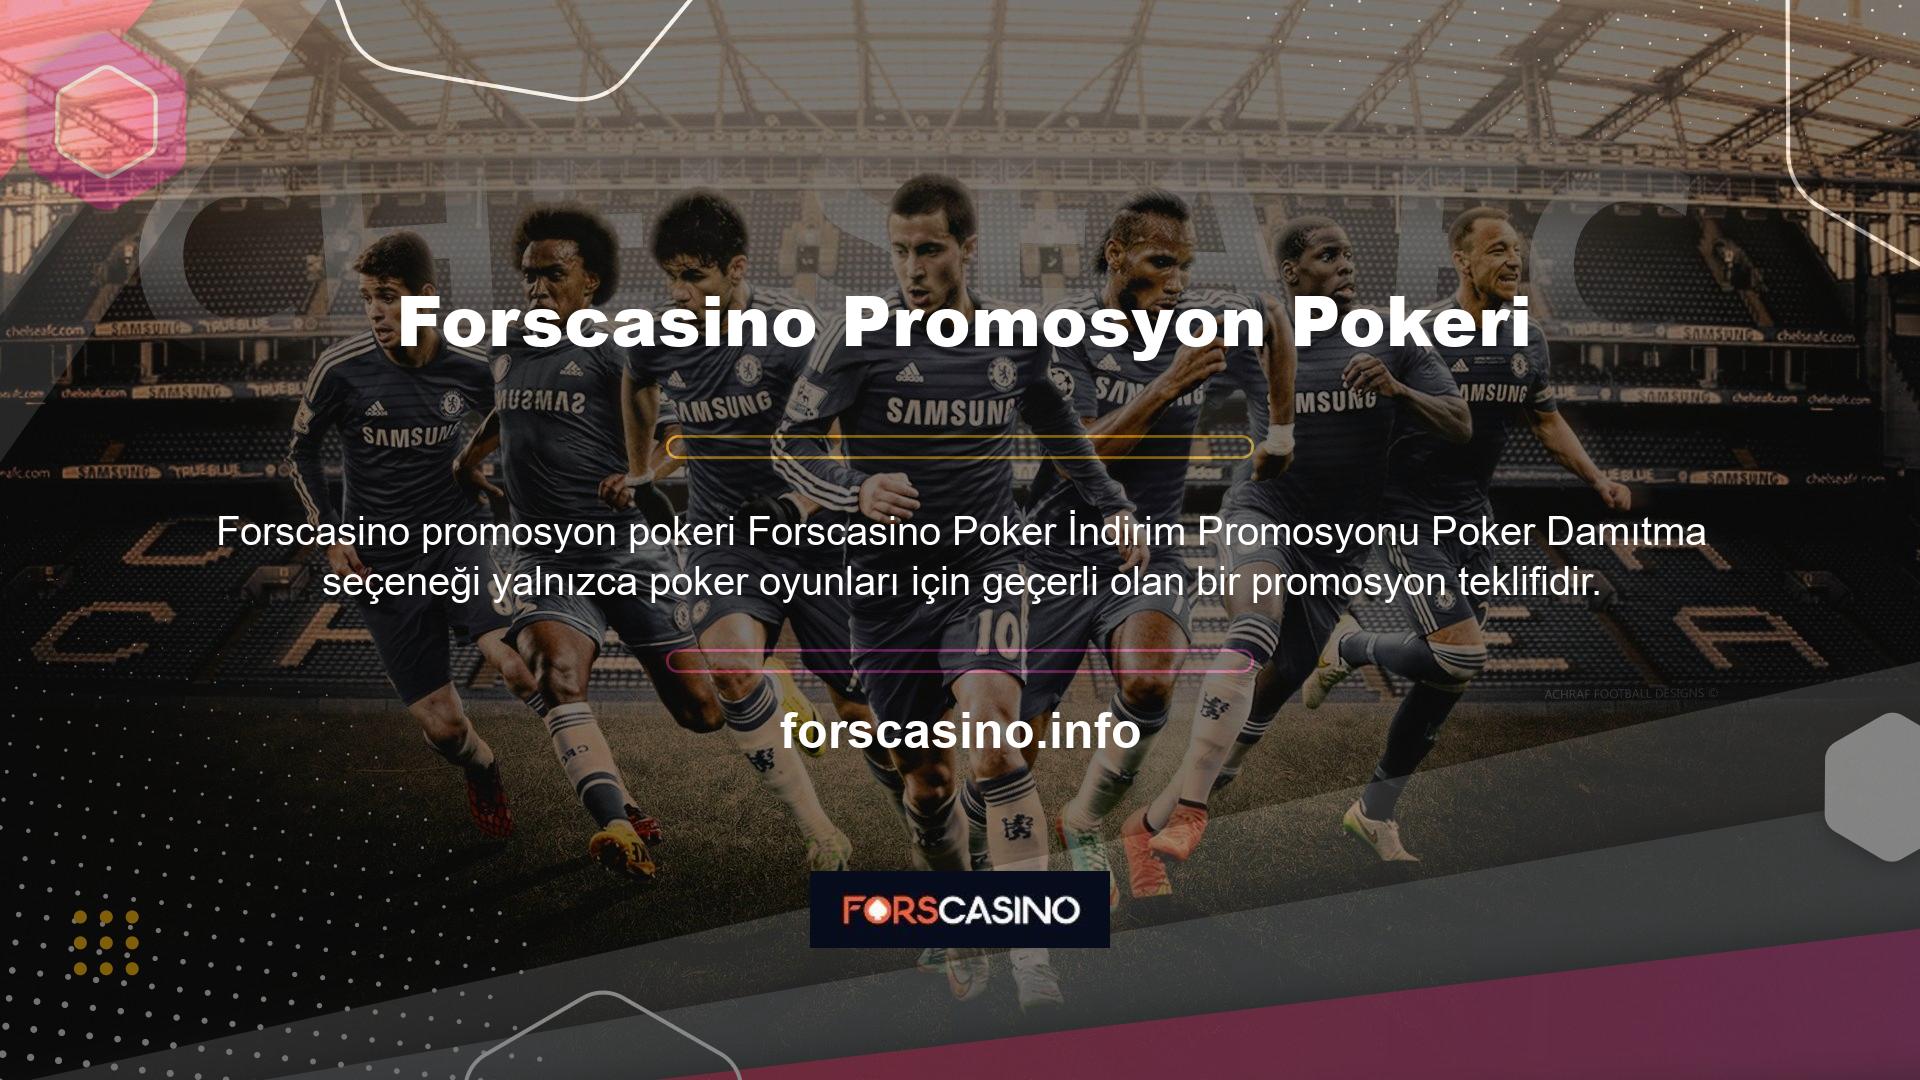 Masa oyunu komisyonunun bir kısmı iade edilecektir Yabancı casino siteleri yabancı oyunlar gibi promosyonlar sunmaktadır